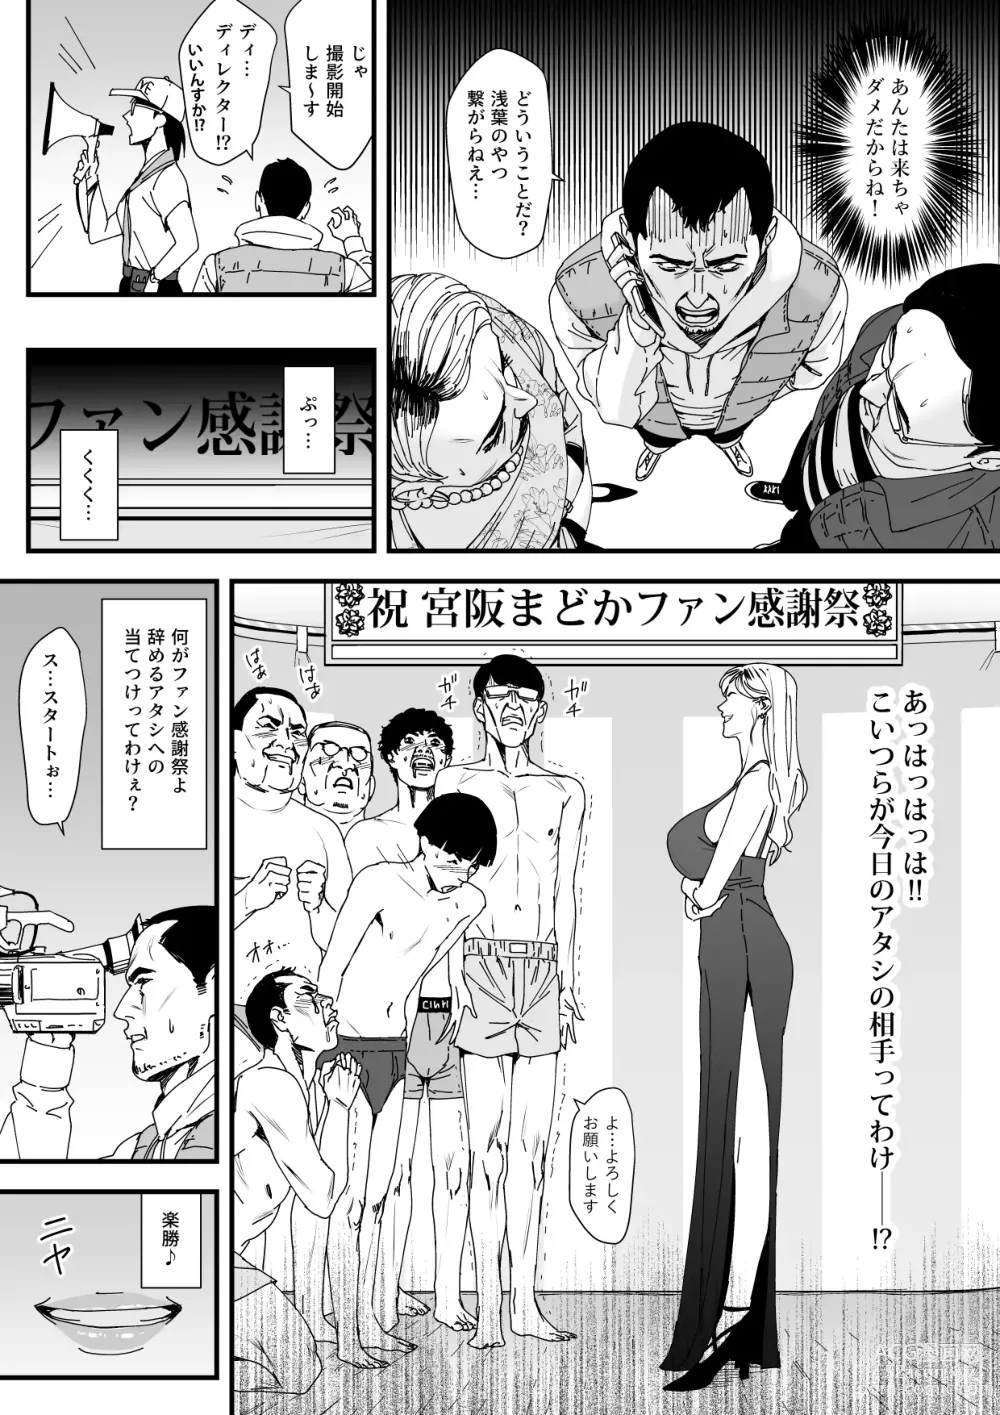 Page 5 of doujinshi カリスマAV女優（23歳）を引退撤回するまでイカせまくる 3 『ファン感謝祭編』